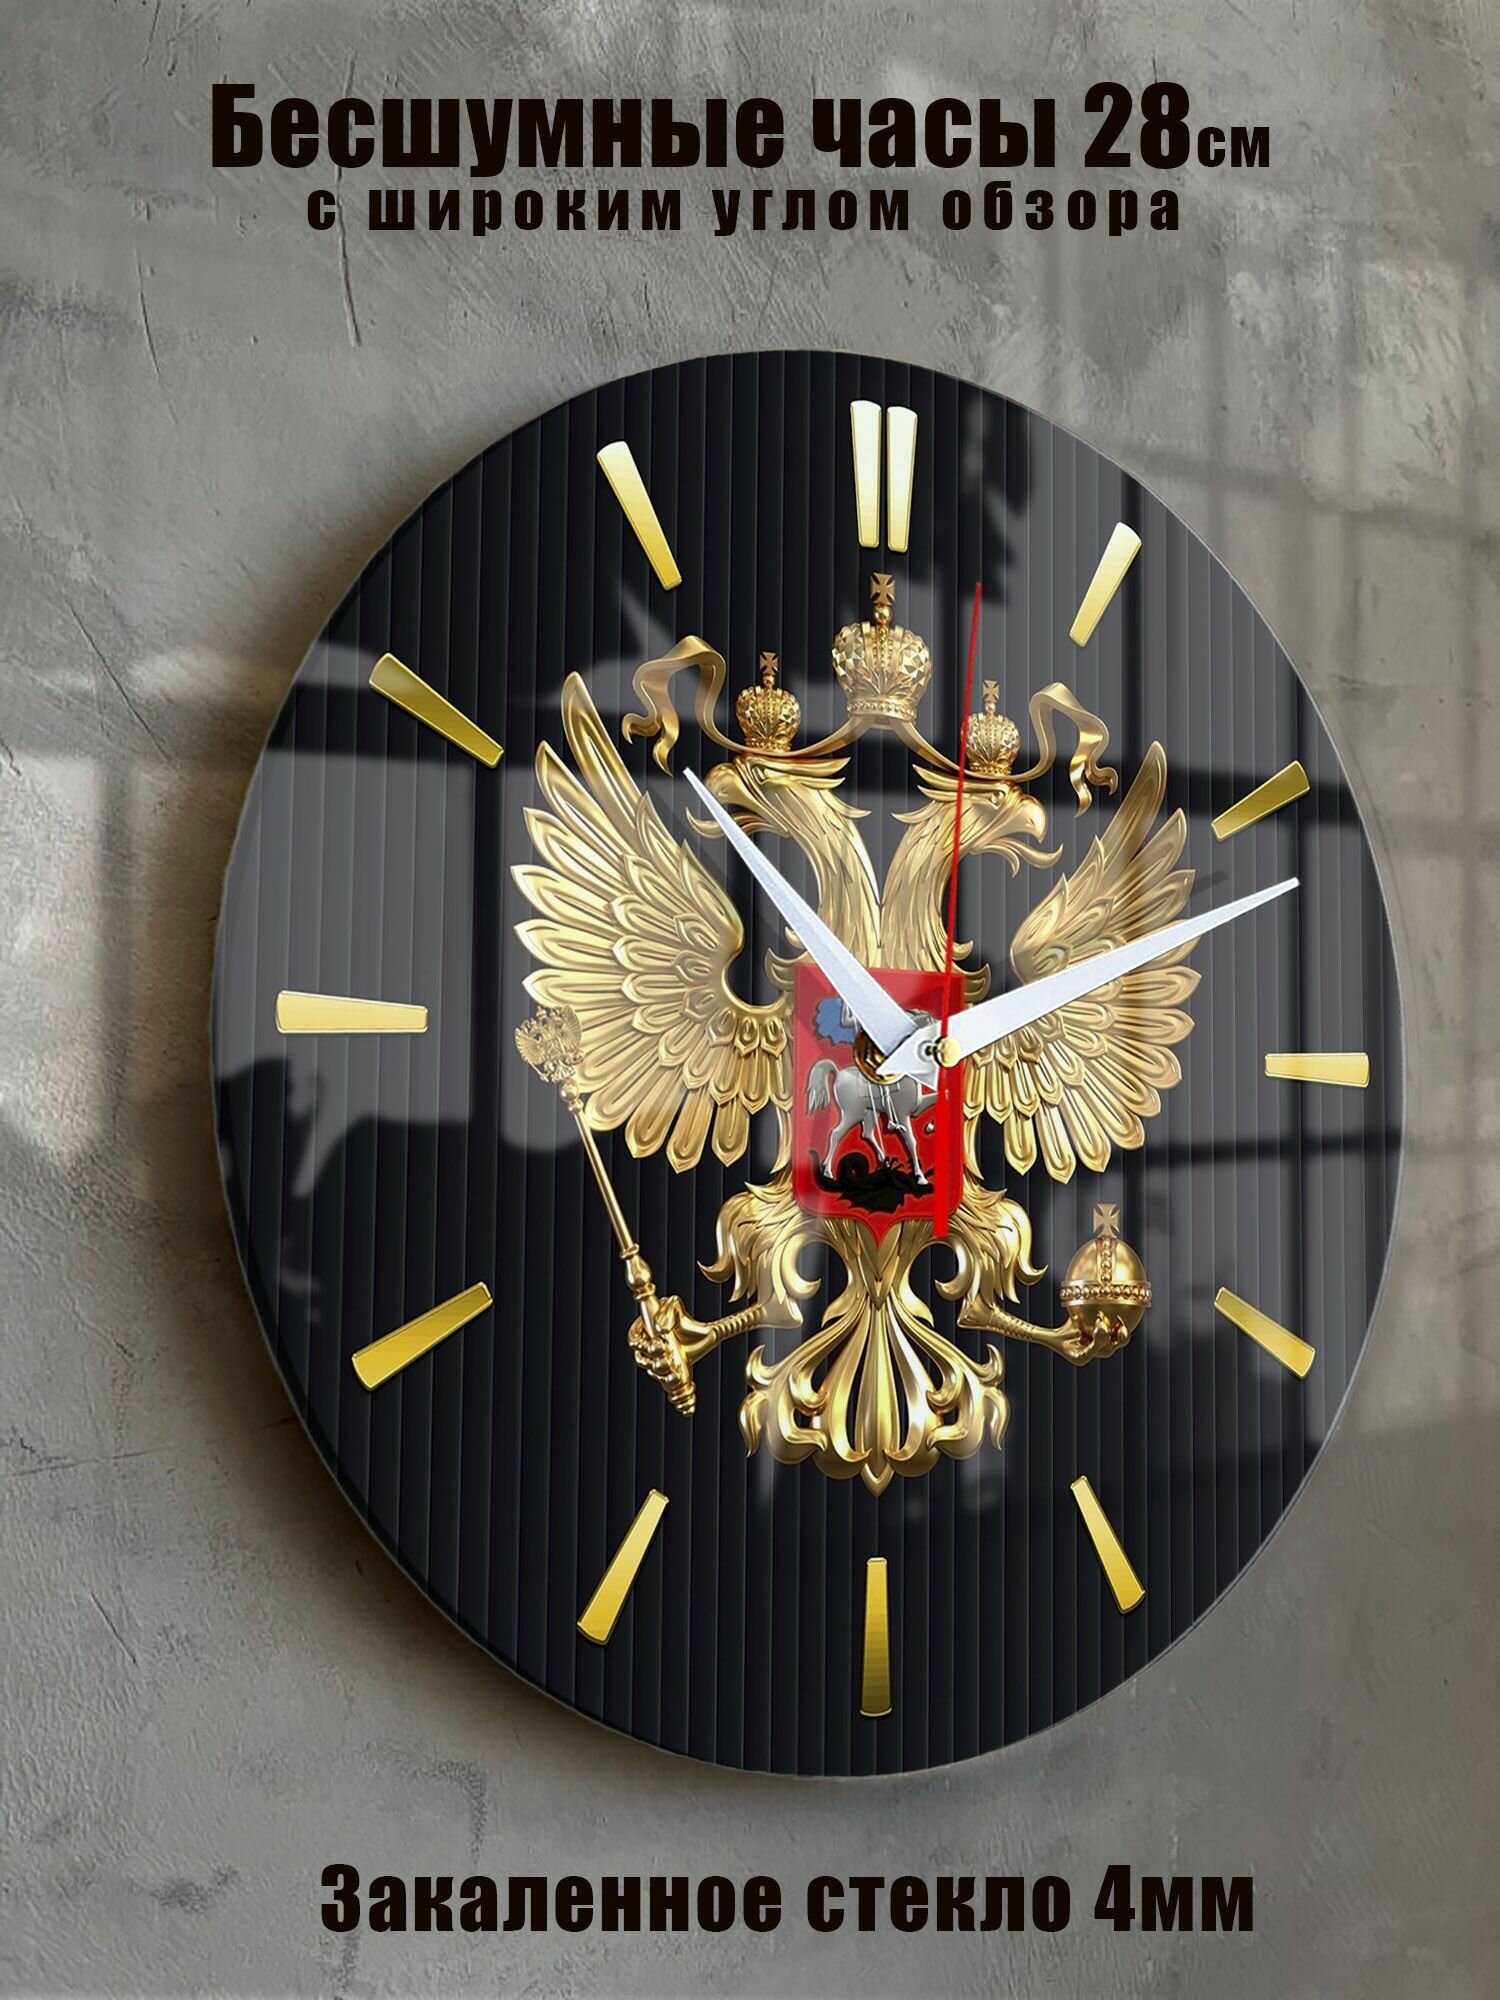 Часы настенные бесшумные большие на кухню на стену "Часовой завод идеал" с символикой России диаметр 28 см часы кухонные настенные интерьерные настенные часы